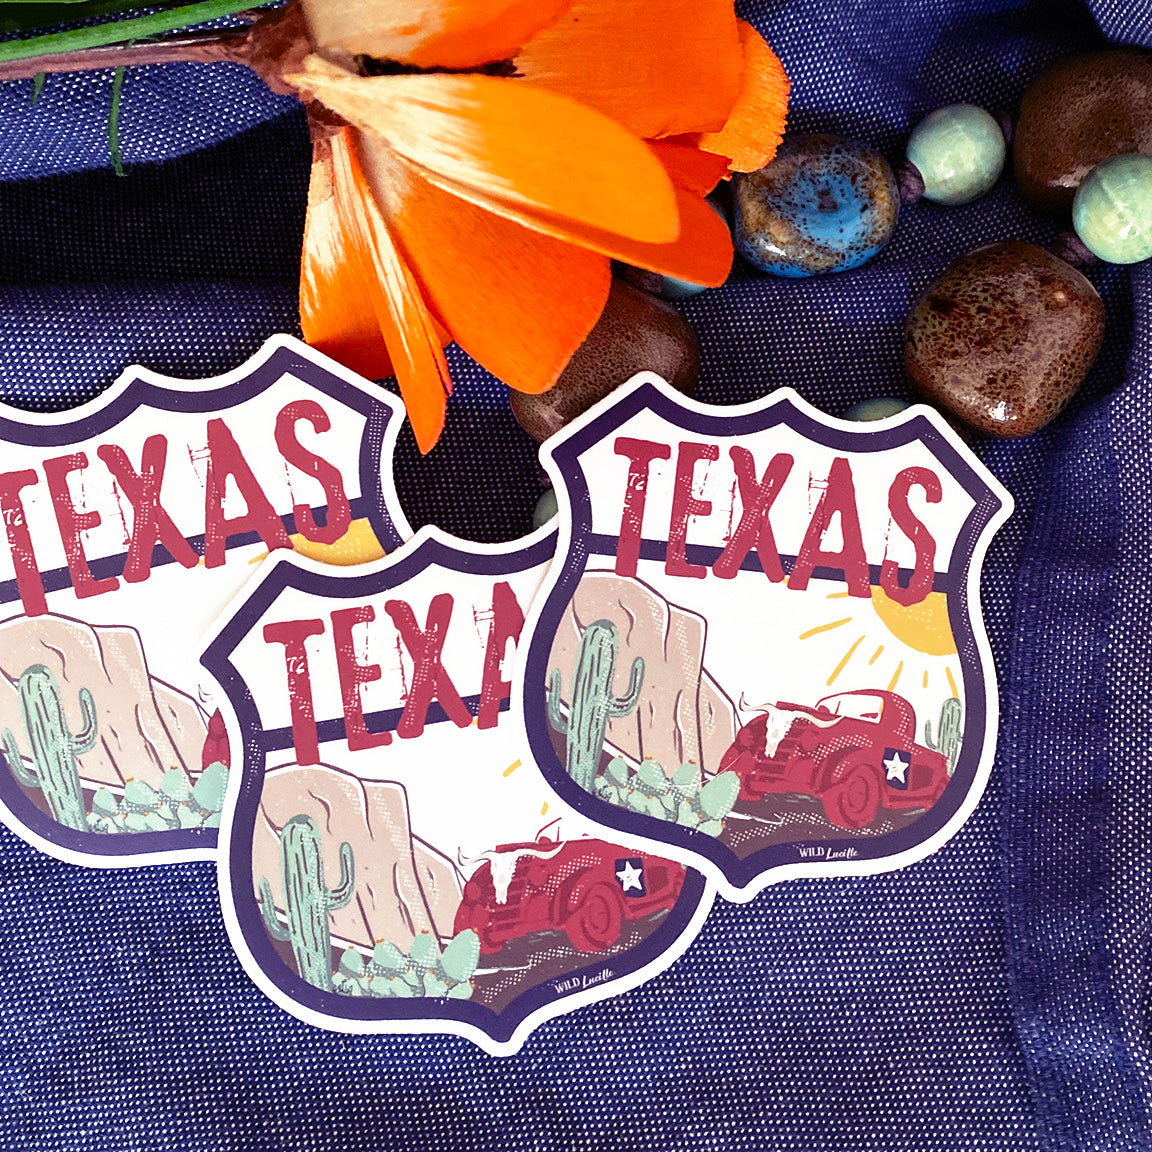 Destination Texas - Vinyl Souvenir Sticker Decals